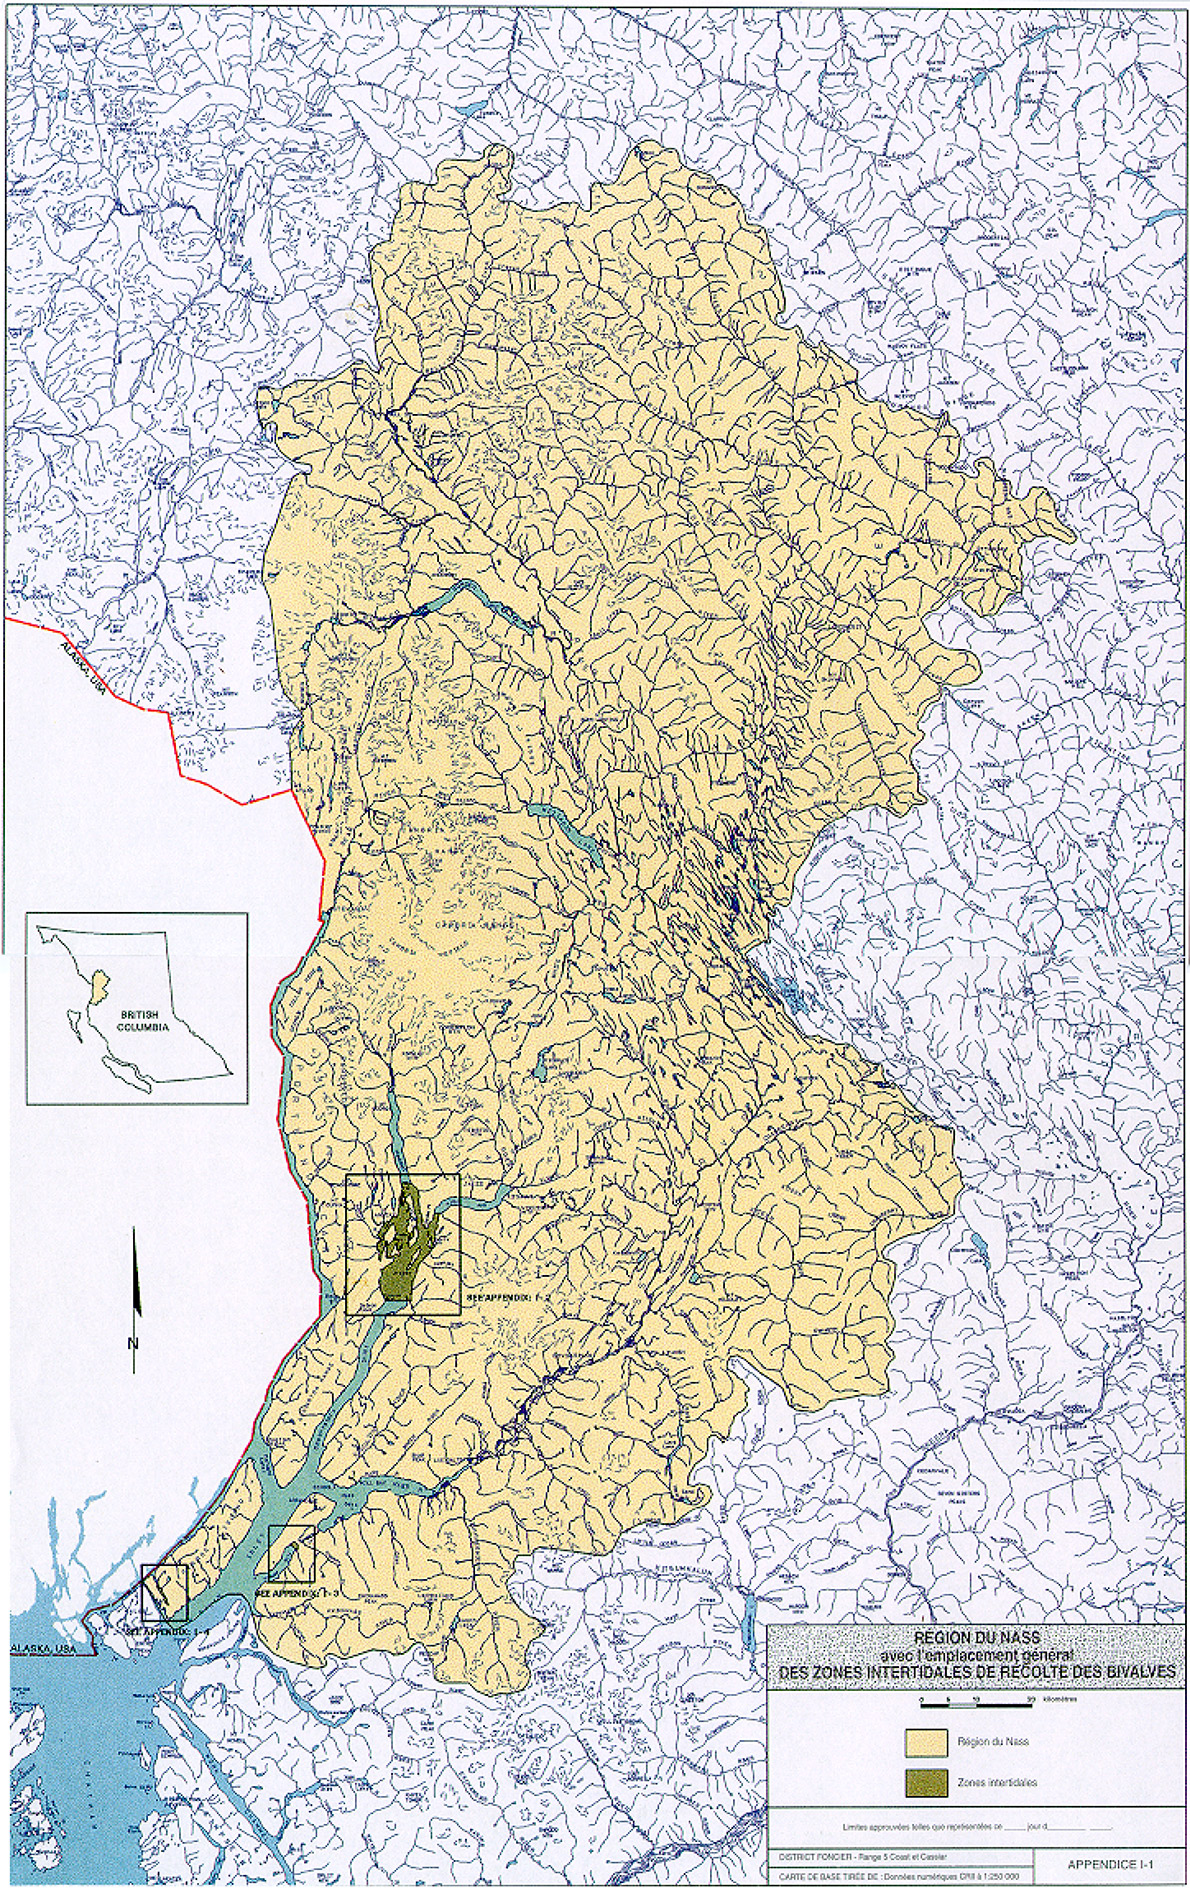 Carte de la région du Nass avec l'emplacement général des zones interdidales de récolte de bivalves